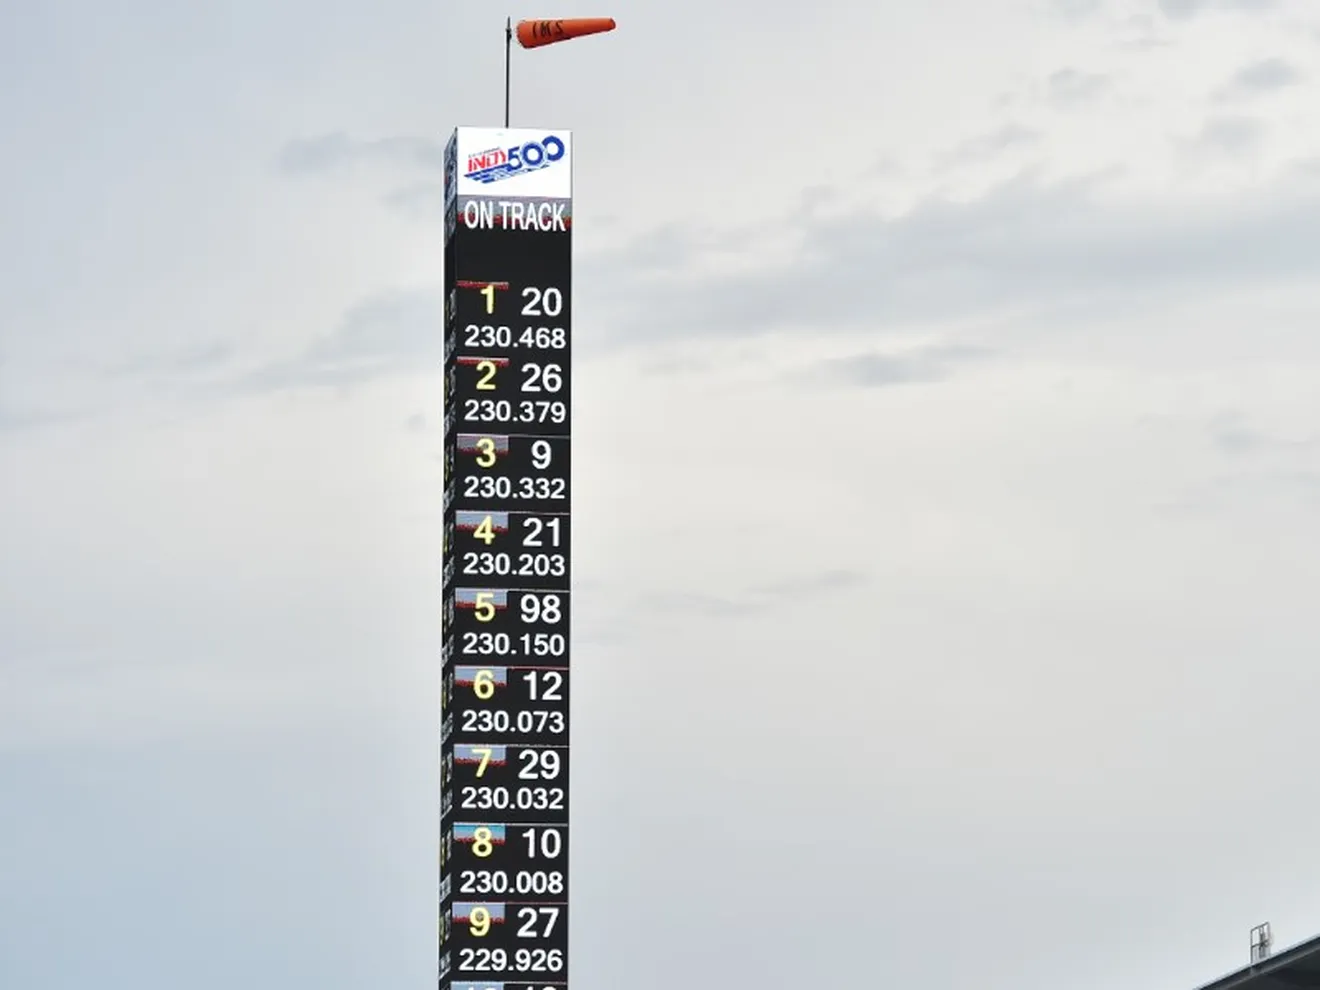 Así te hemos contado la clasificación (Pole Day) de la Indy 500